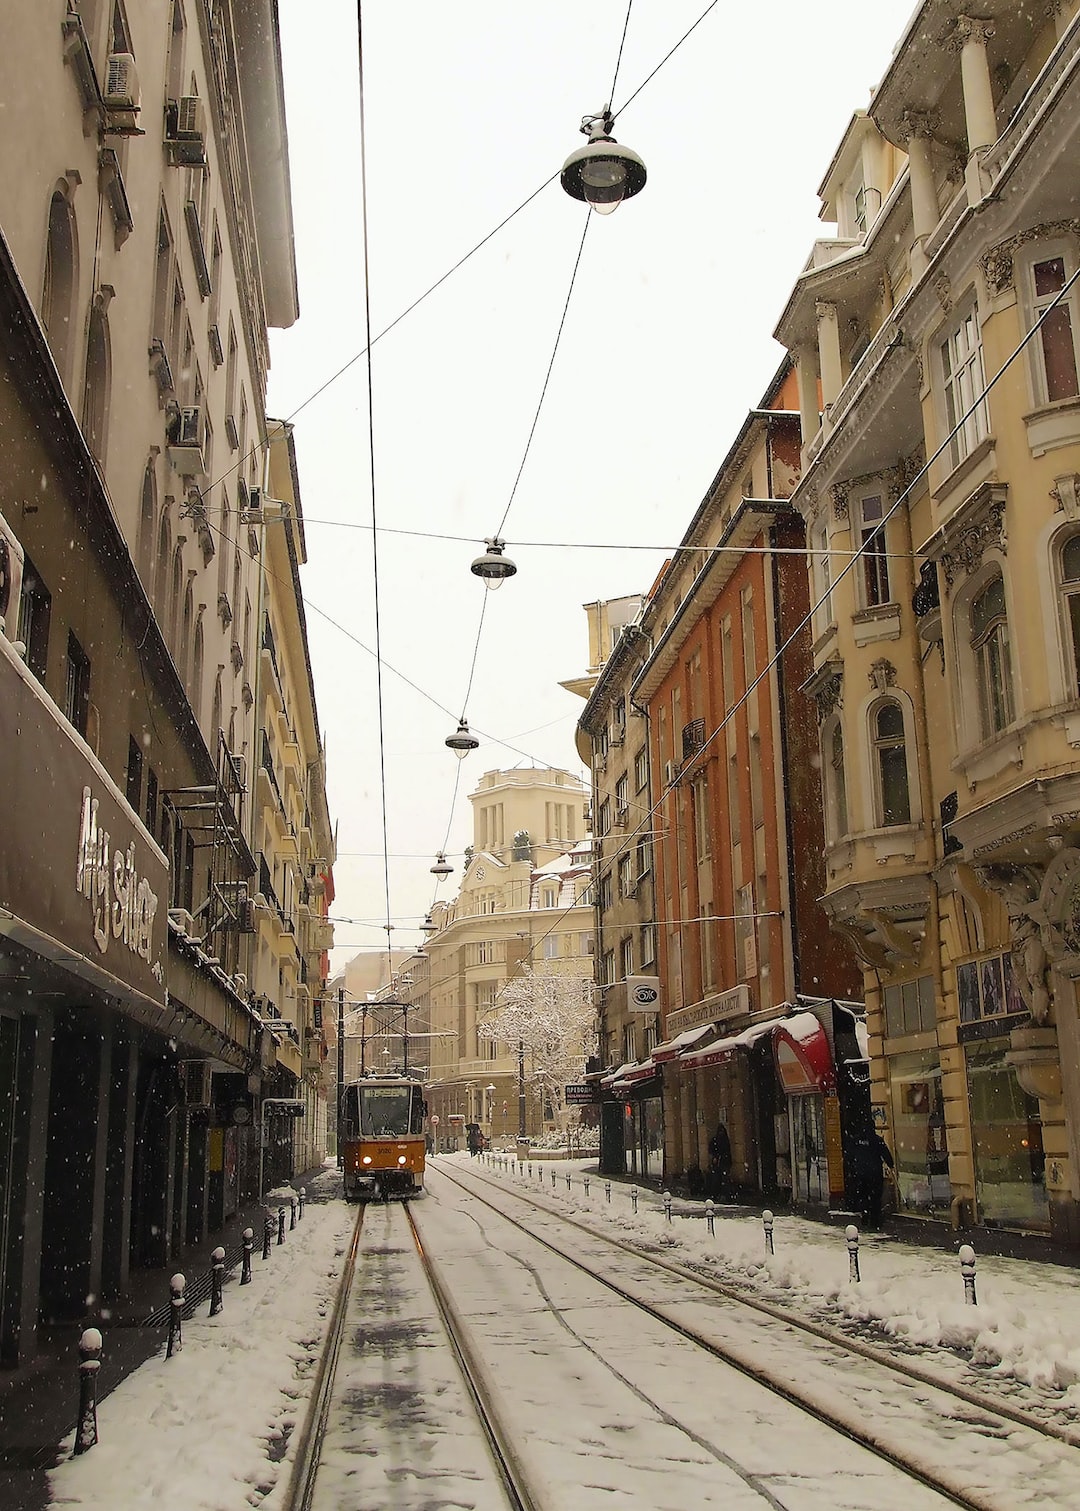 Snowy Street in Sofia with a Tram